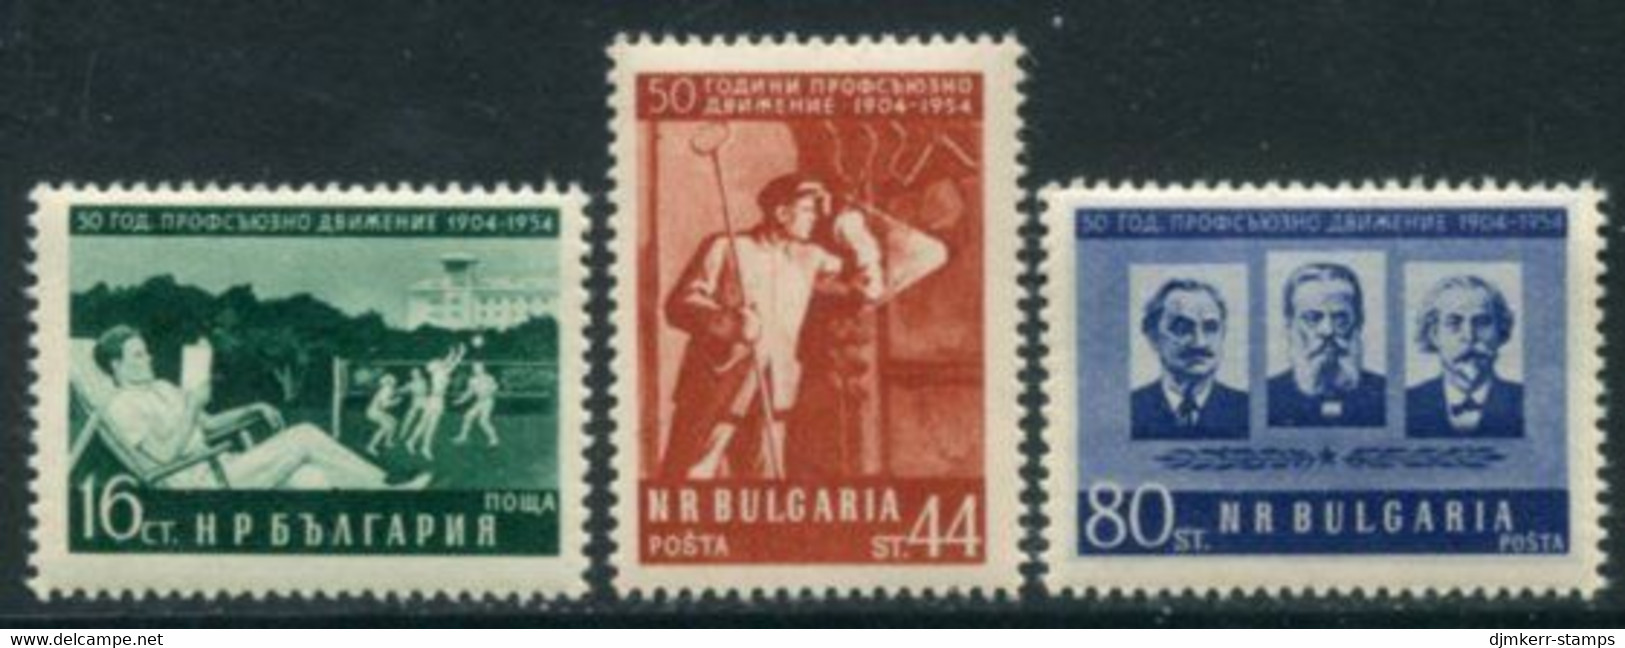 BULGARIA 1954 Trades Unions Anniversary MNH / ** .  Michel 932-34 - Nuovi